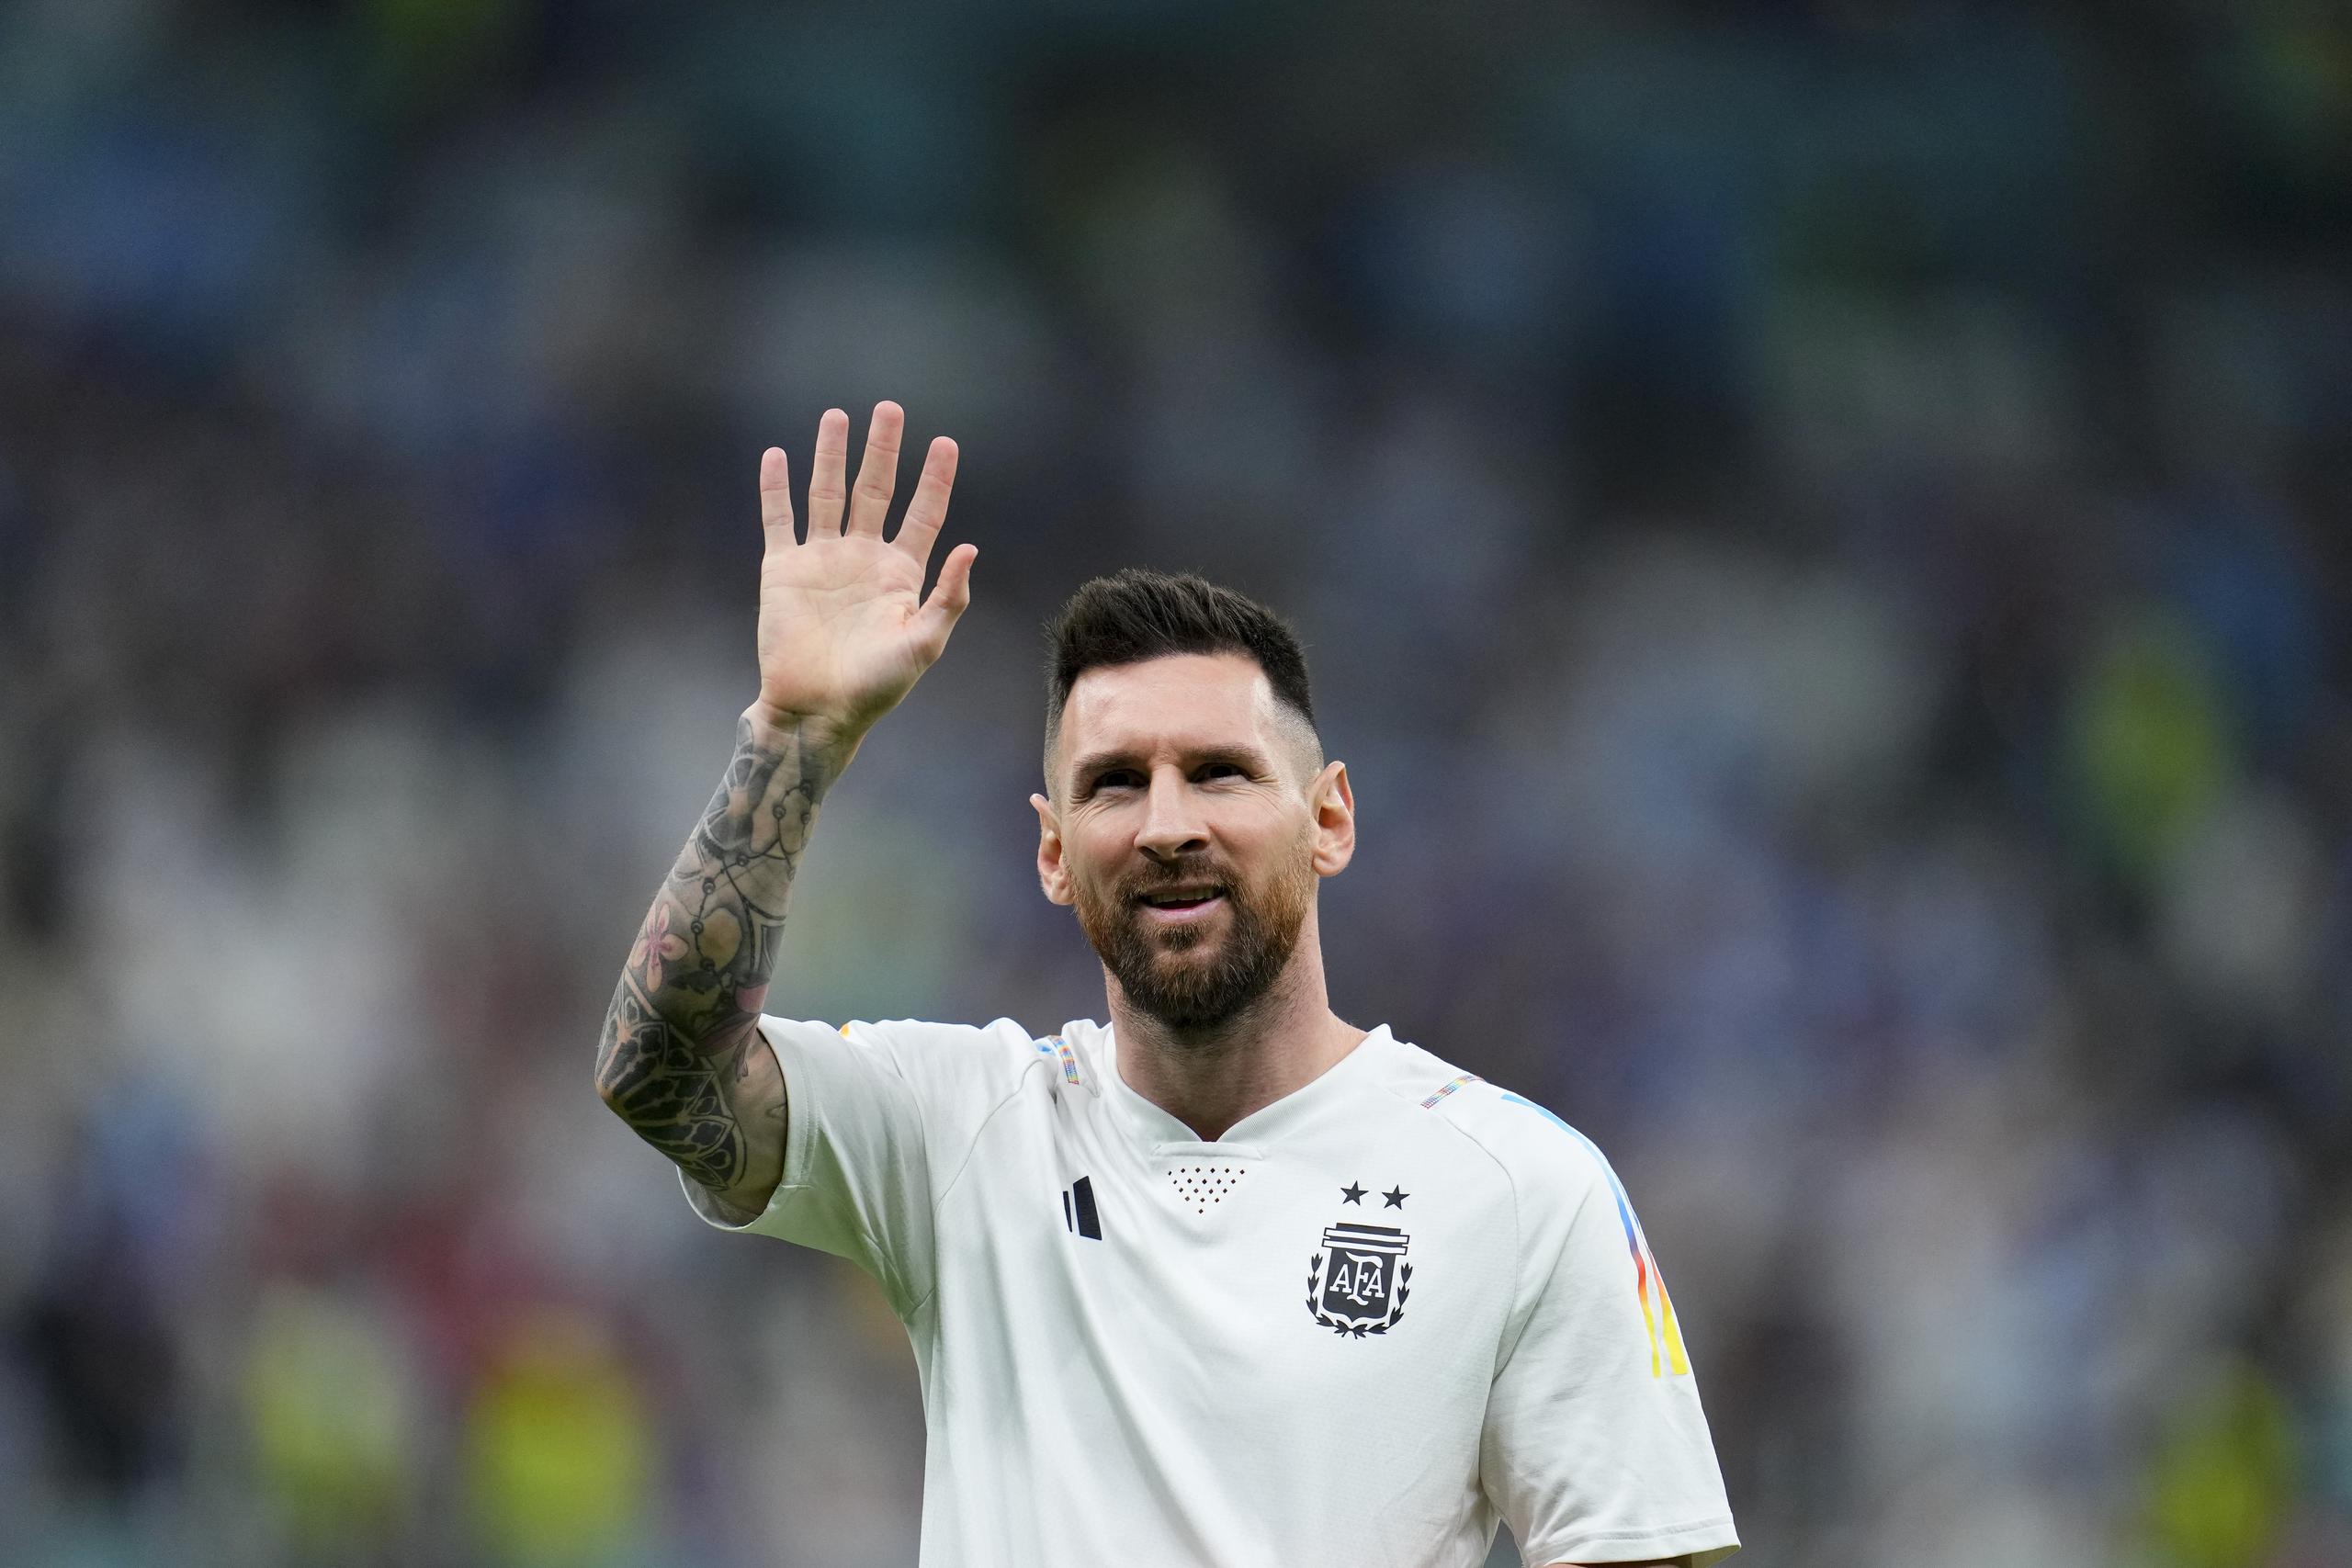 Cinco son los Mundiales en los que el delantero argentino Lionel Messi ha participado: Alemania 2006, Sudáfrica 2010, Brasil 2014, Rusia 2018 y Qatar 2022.